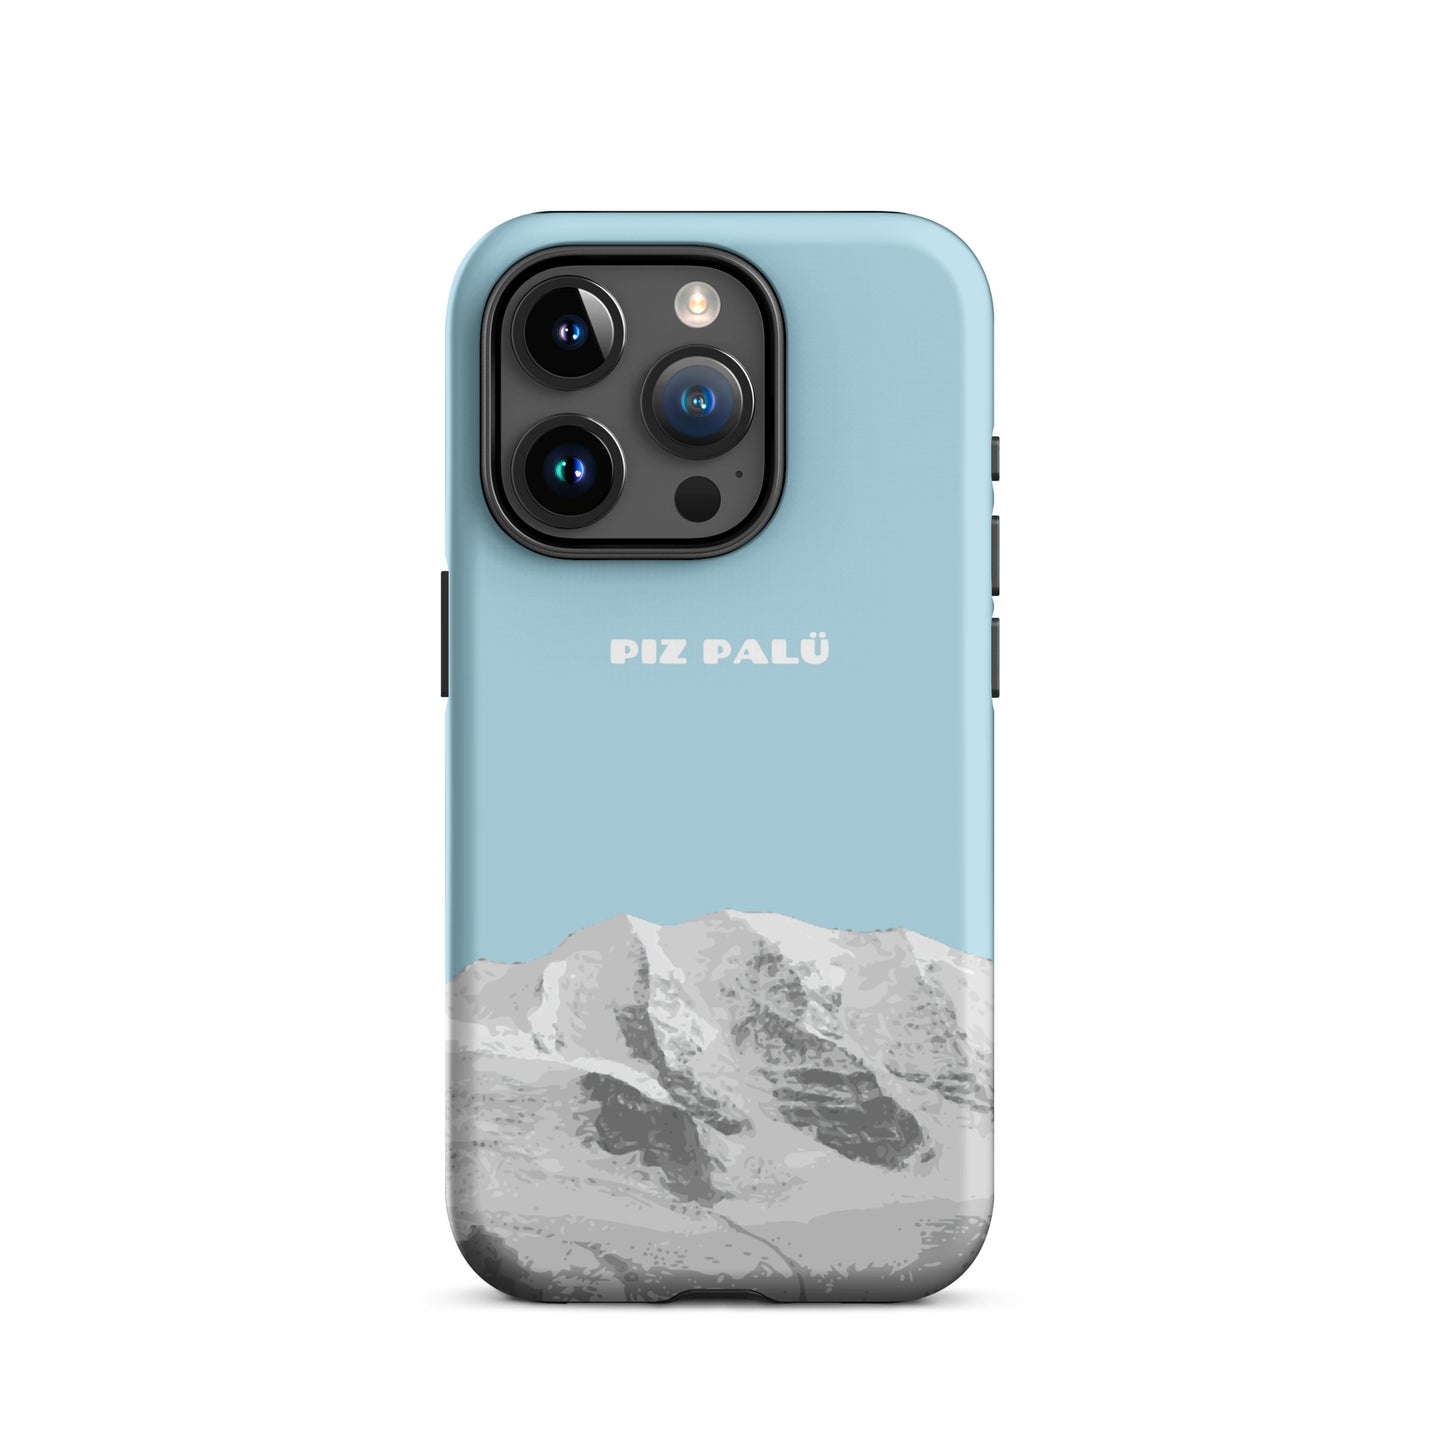 Hülle für das iPhone 15 Pro von Apple in der Farbe Hellblau, dass den Piz Palü in Graubünden zeigt.